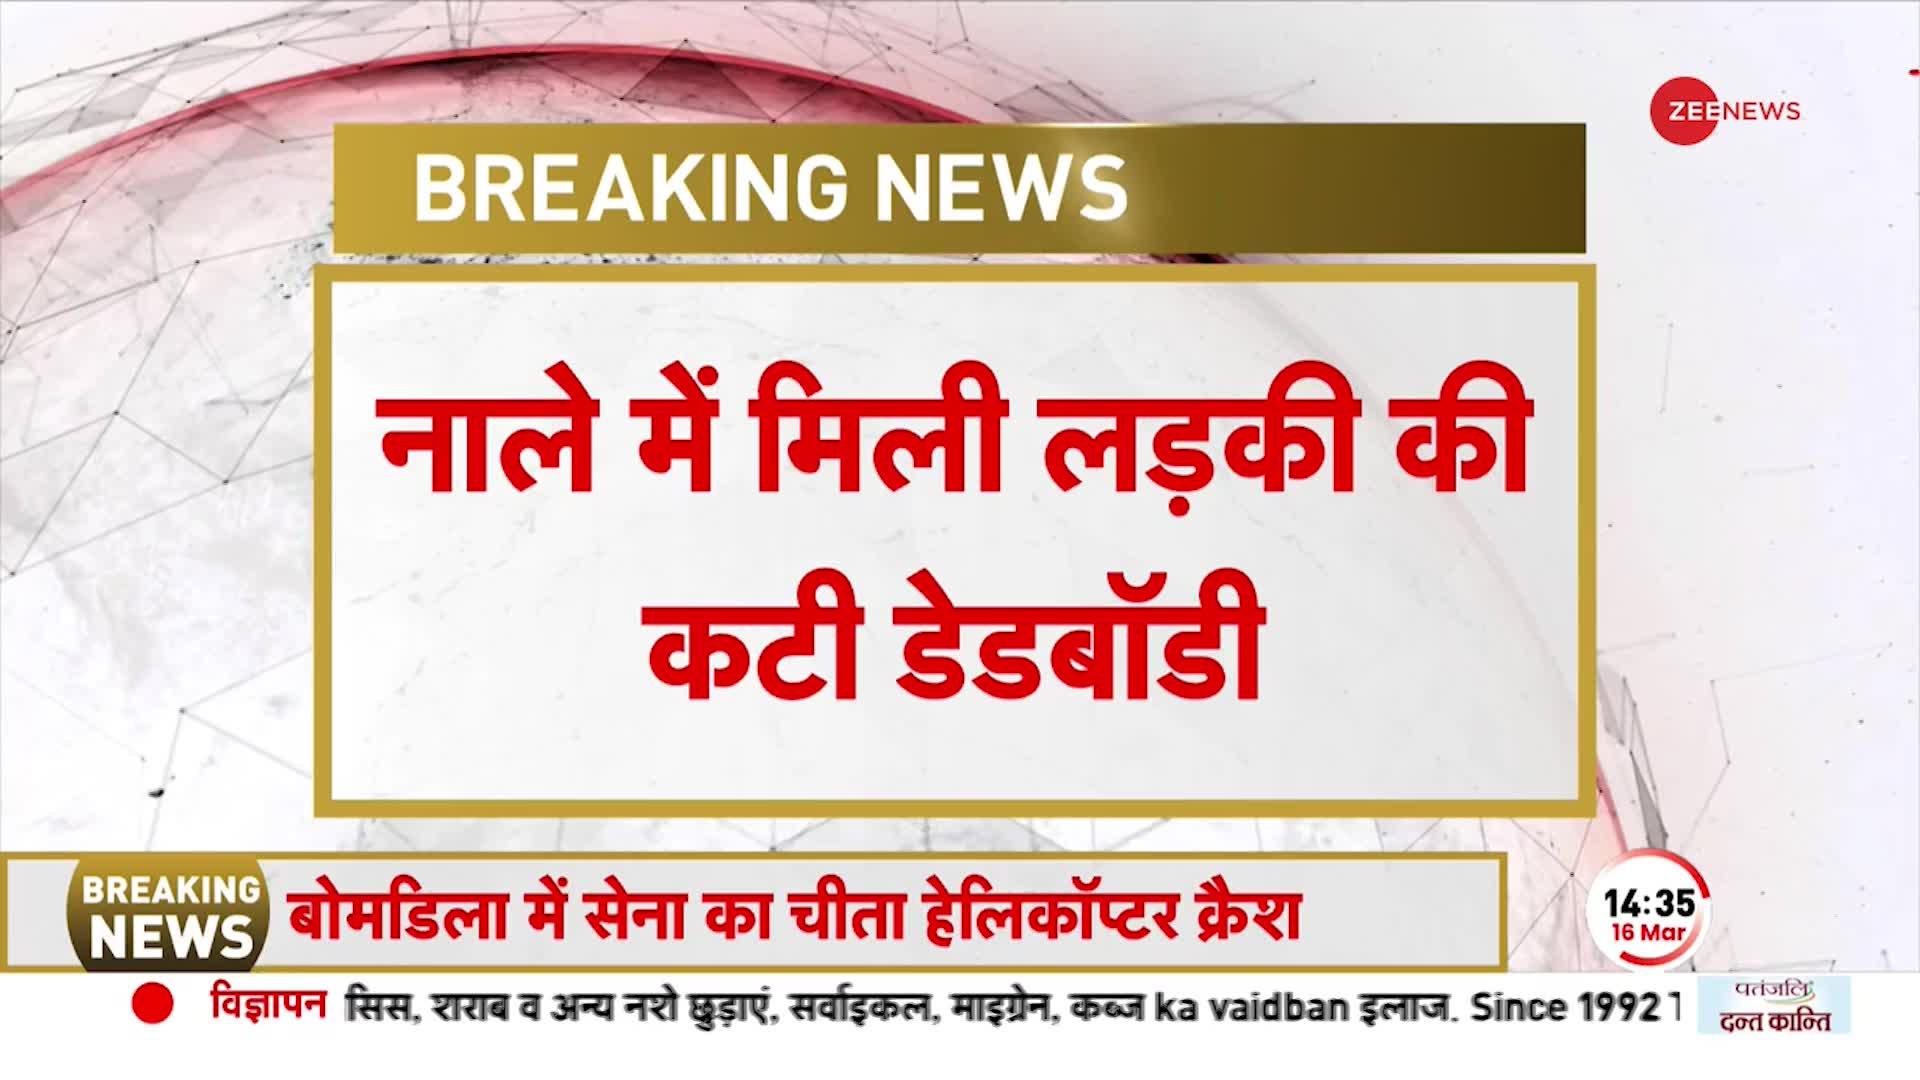 BREAKING NEWS: Noida में नाले में मिली लड़की की कटी हुई डेड बॉडी, खबर से फैली सनसनी